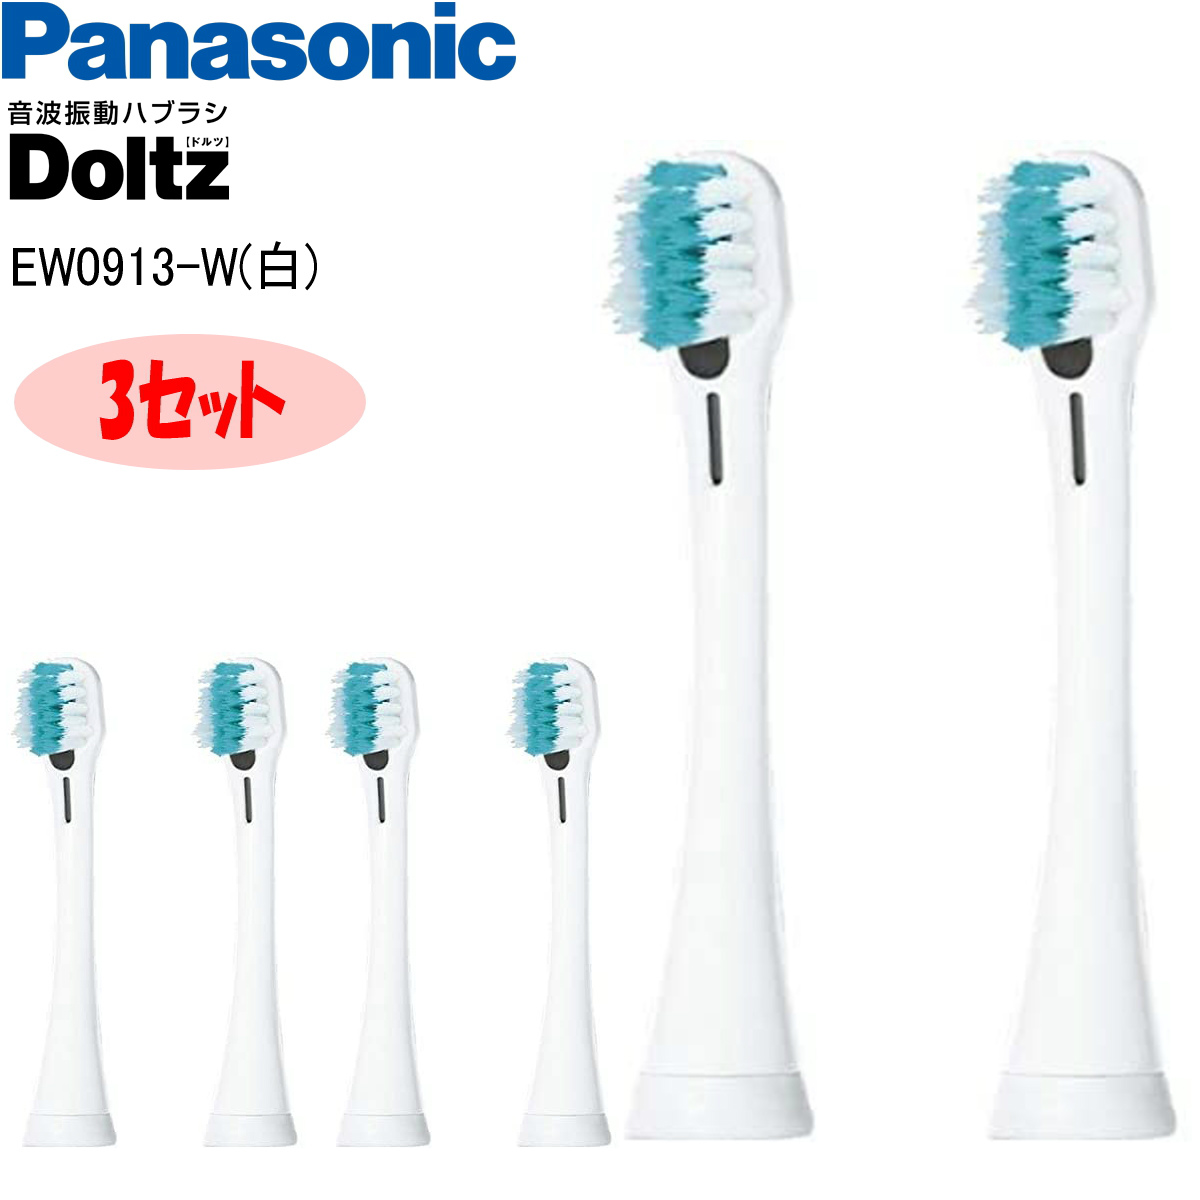 本店は Panasonic EW0801-K 1セット パナソニック 電動歯ブラシ 替え